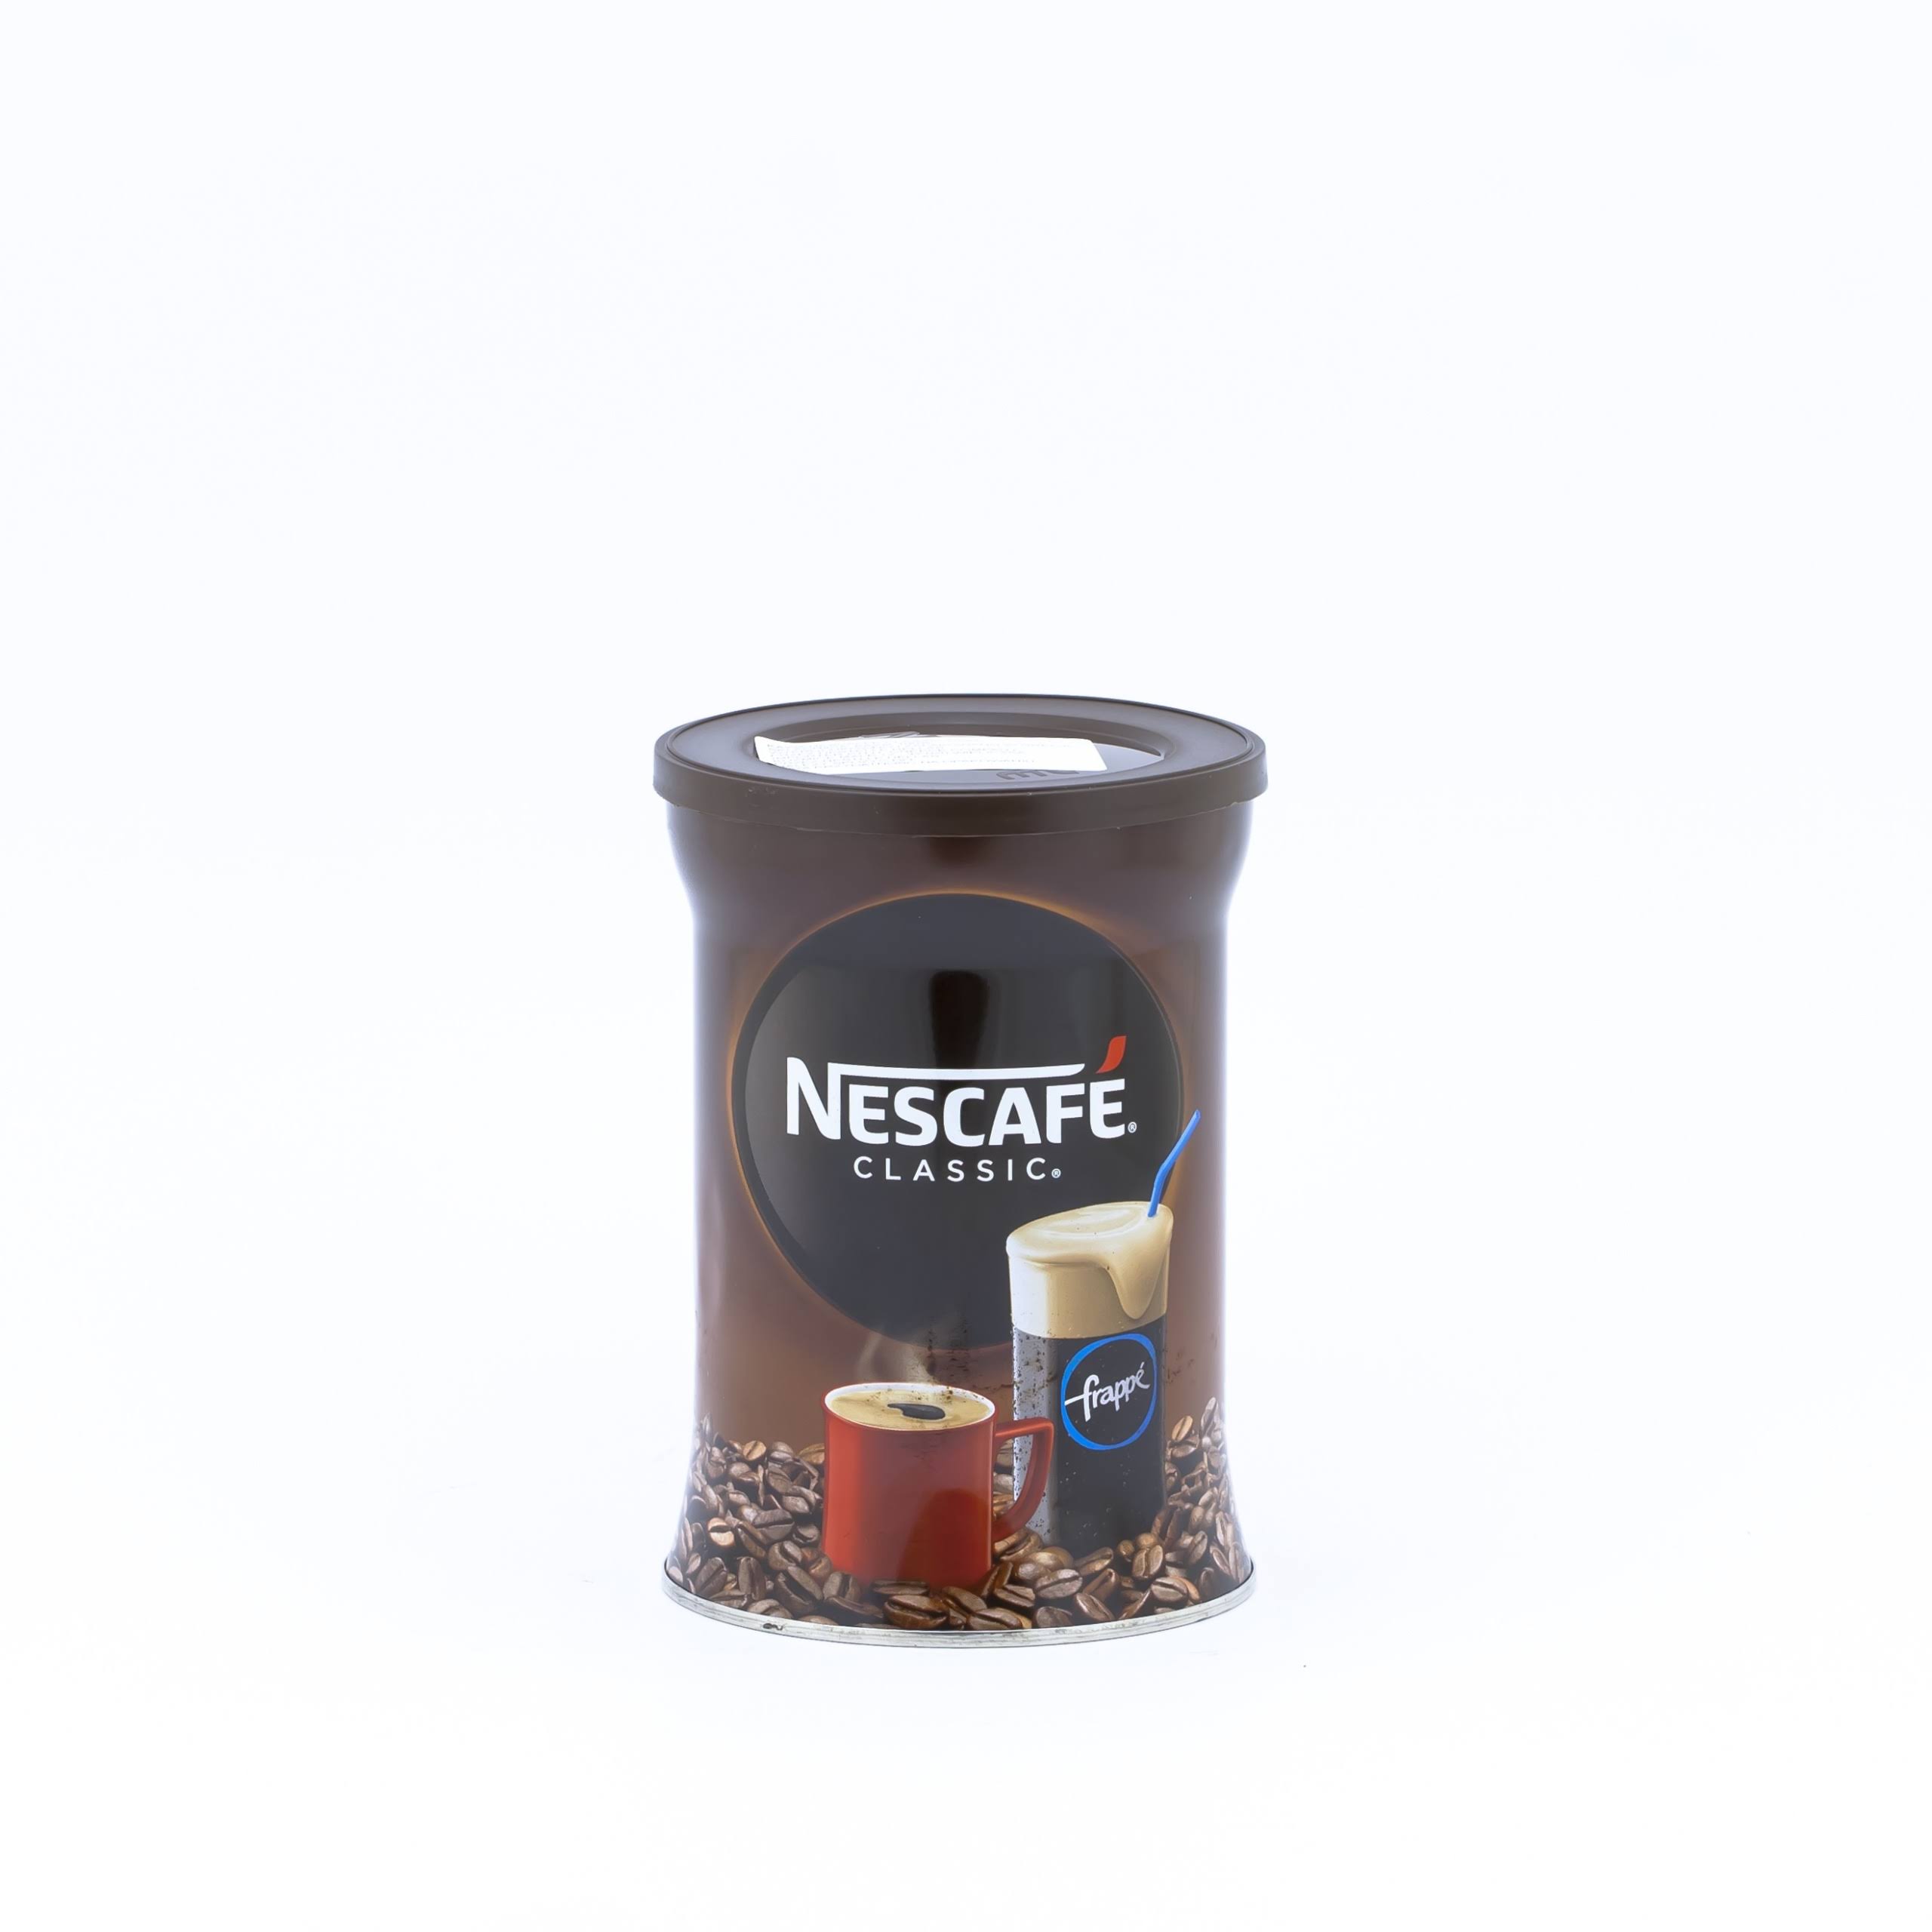 Nescafe Classic Instant Greek Coffee - 7.08oz